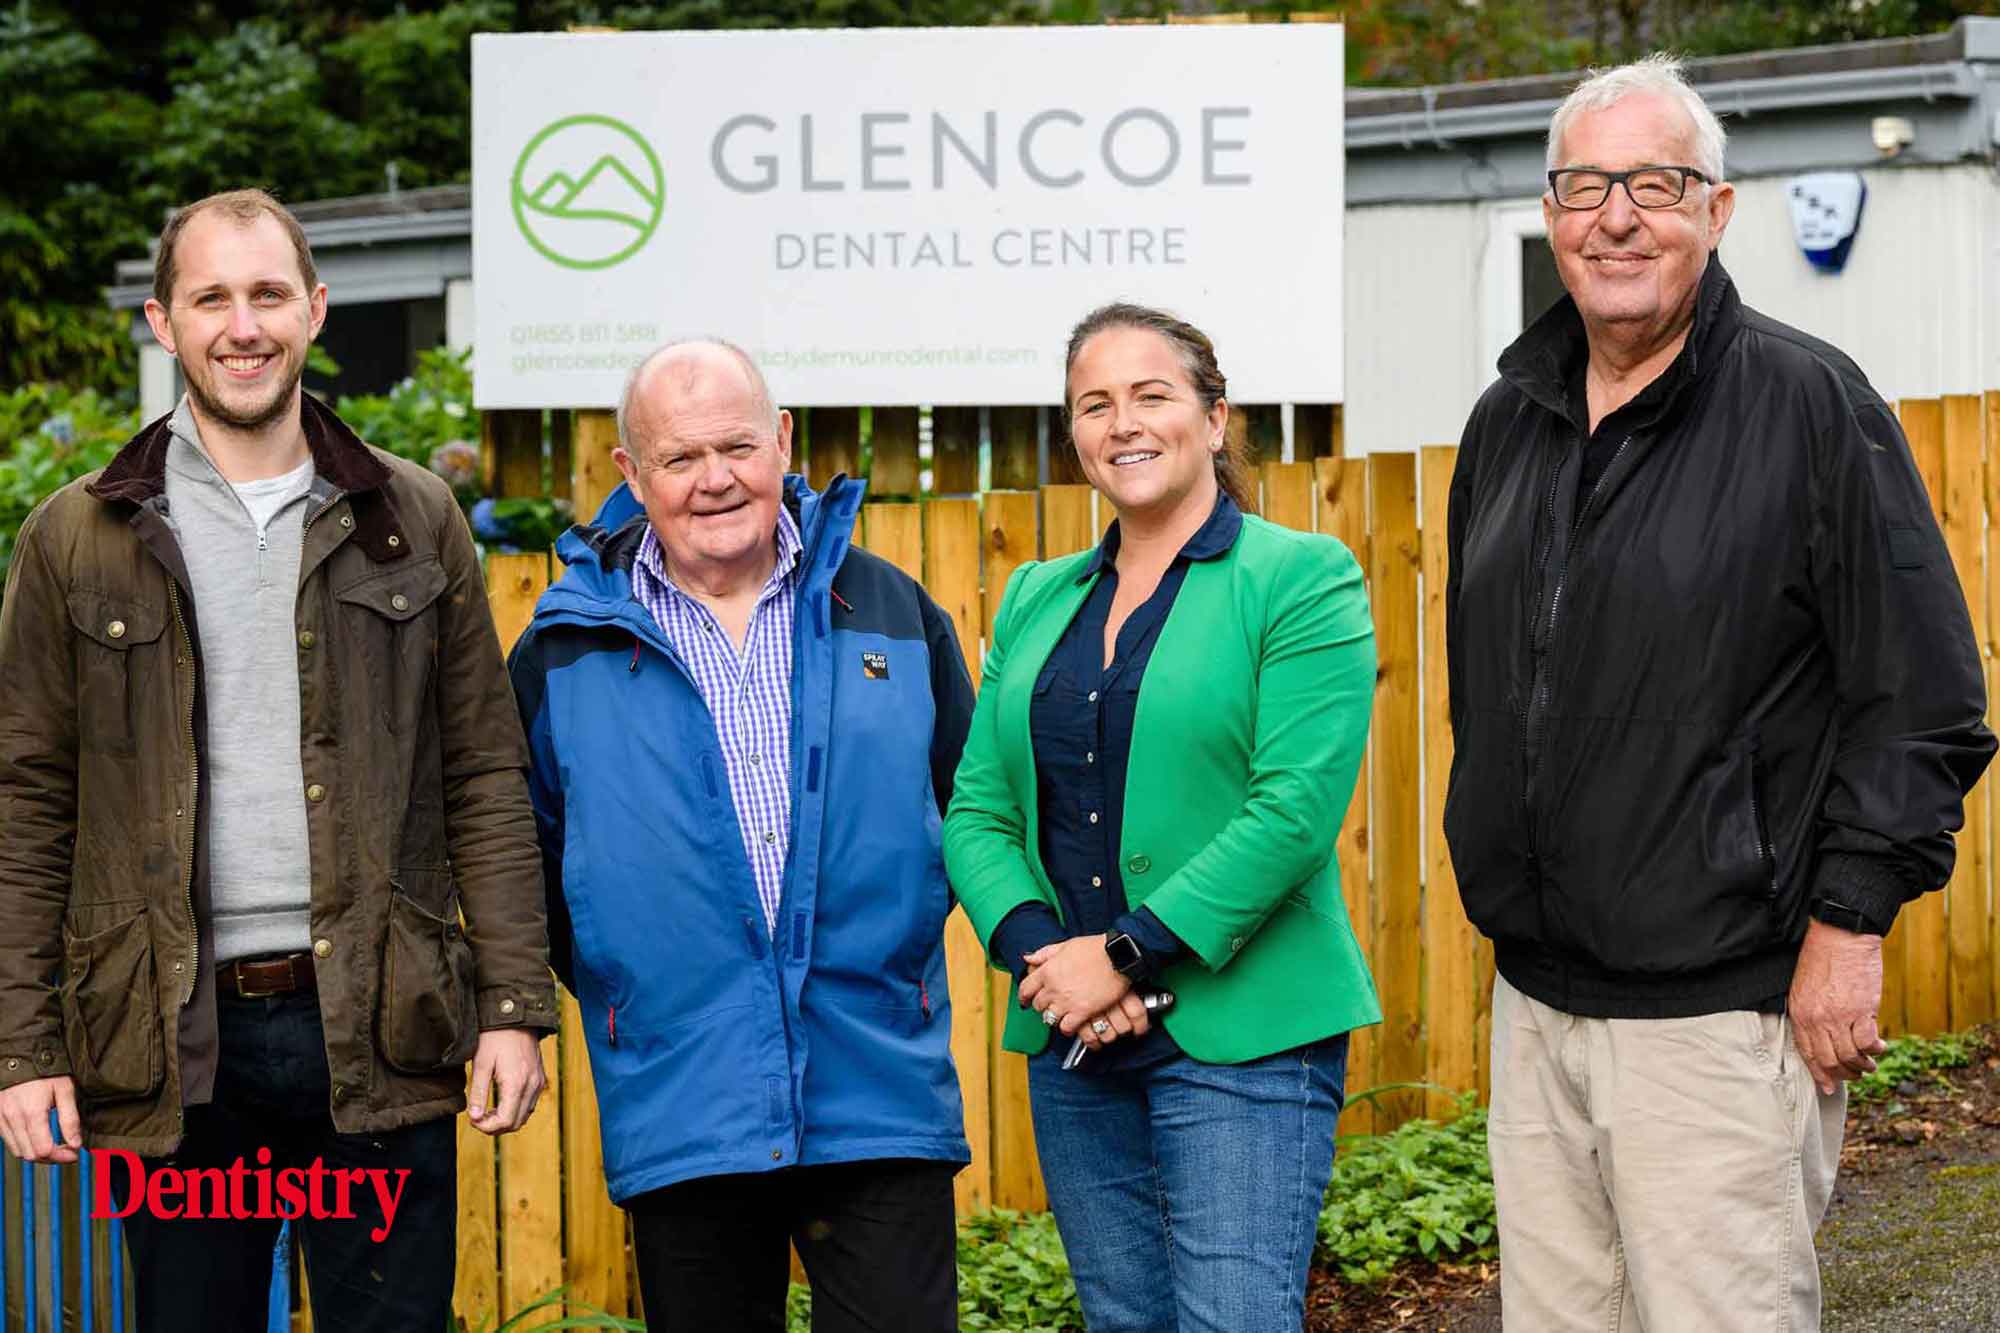 Glencoe Dental Centre